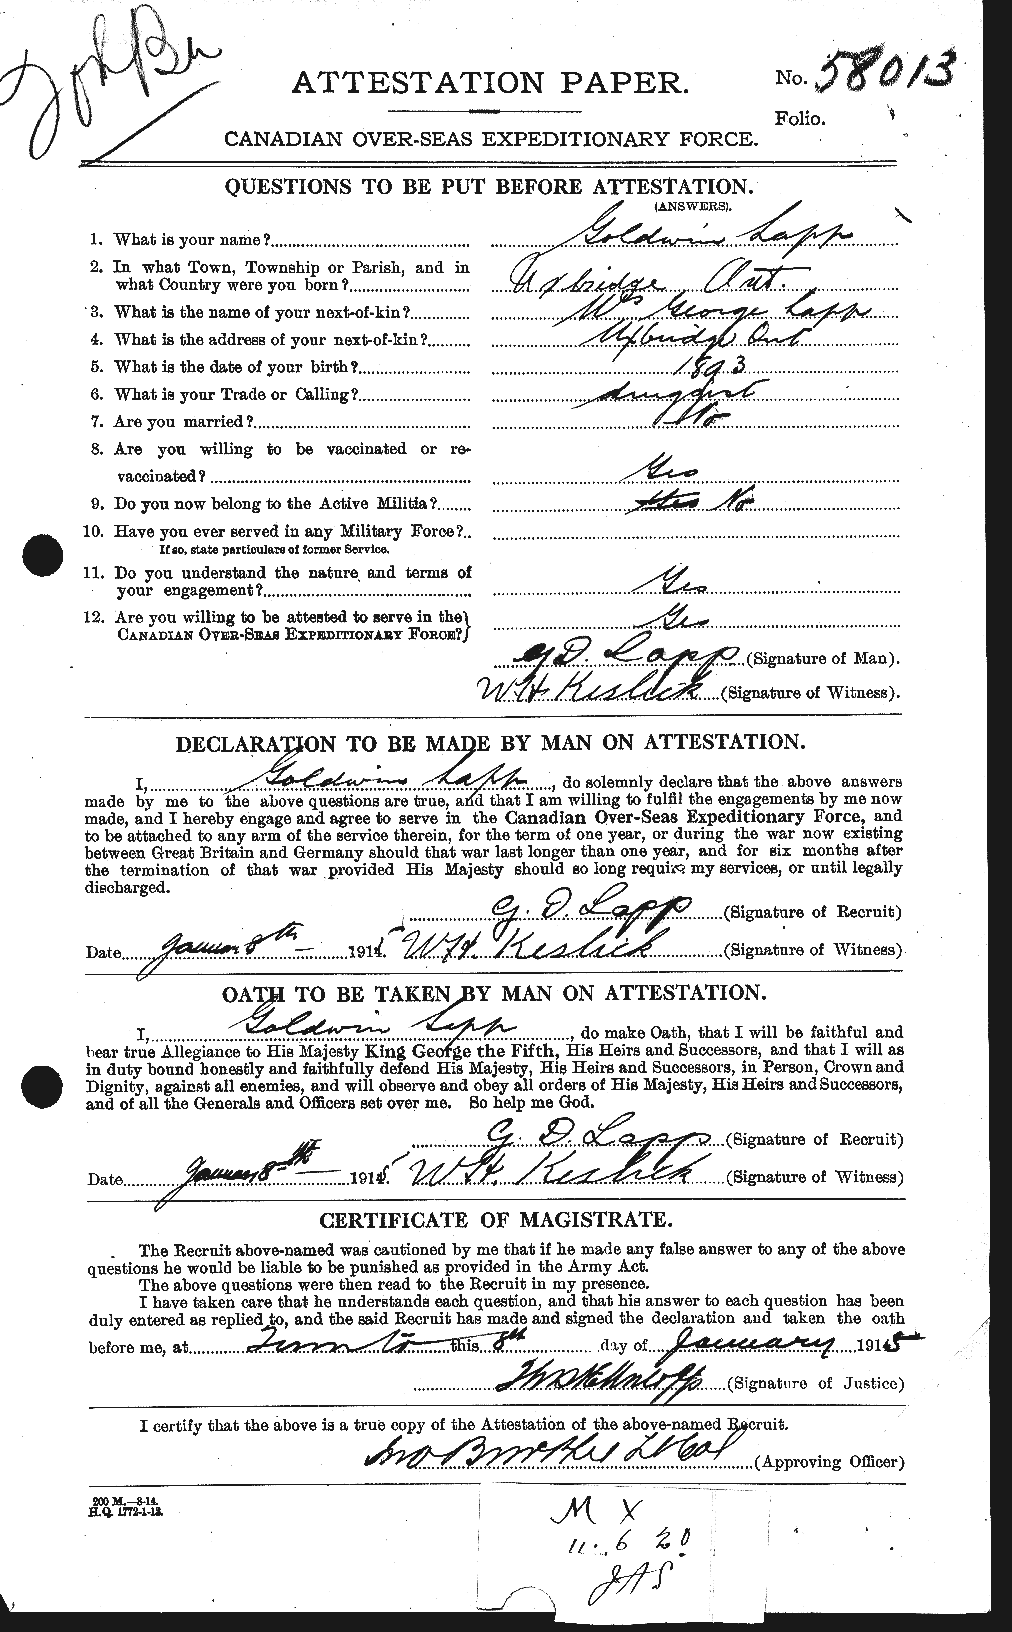 Dossiers du Personnel de la Première Guerre mondiale - CEC 447078a